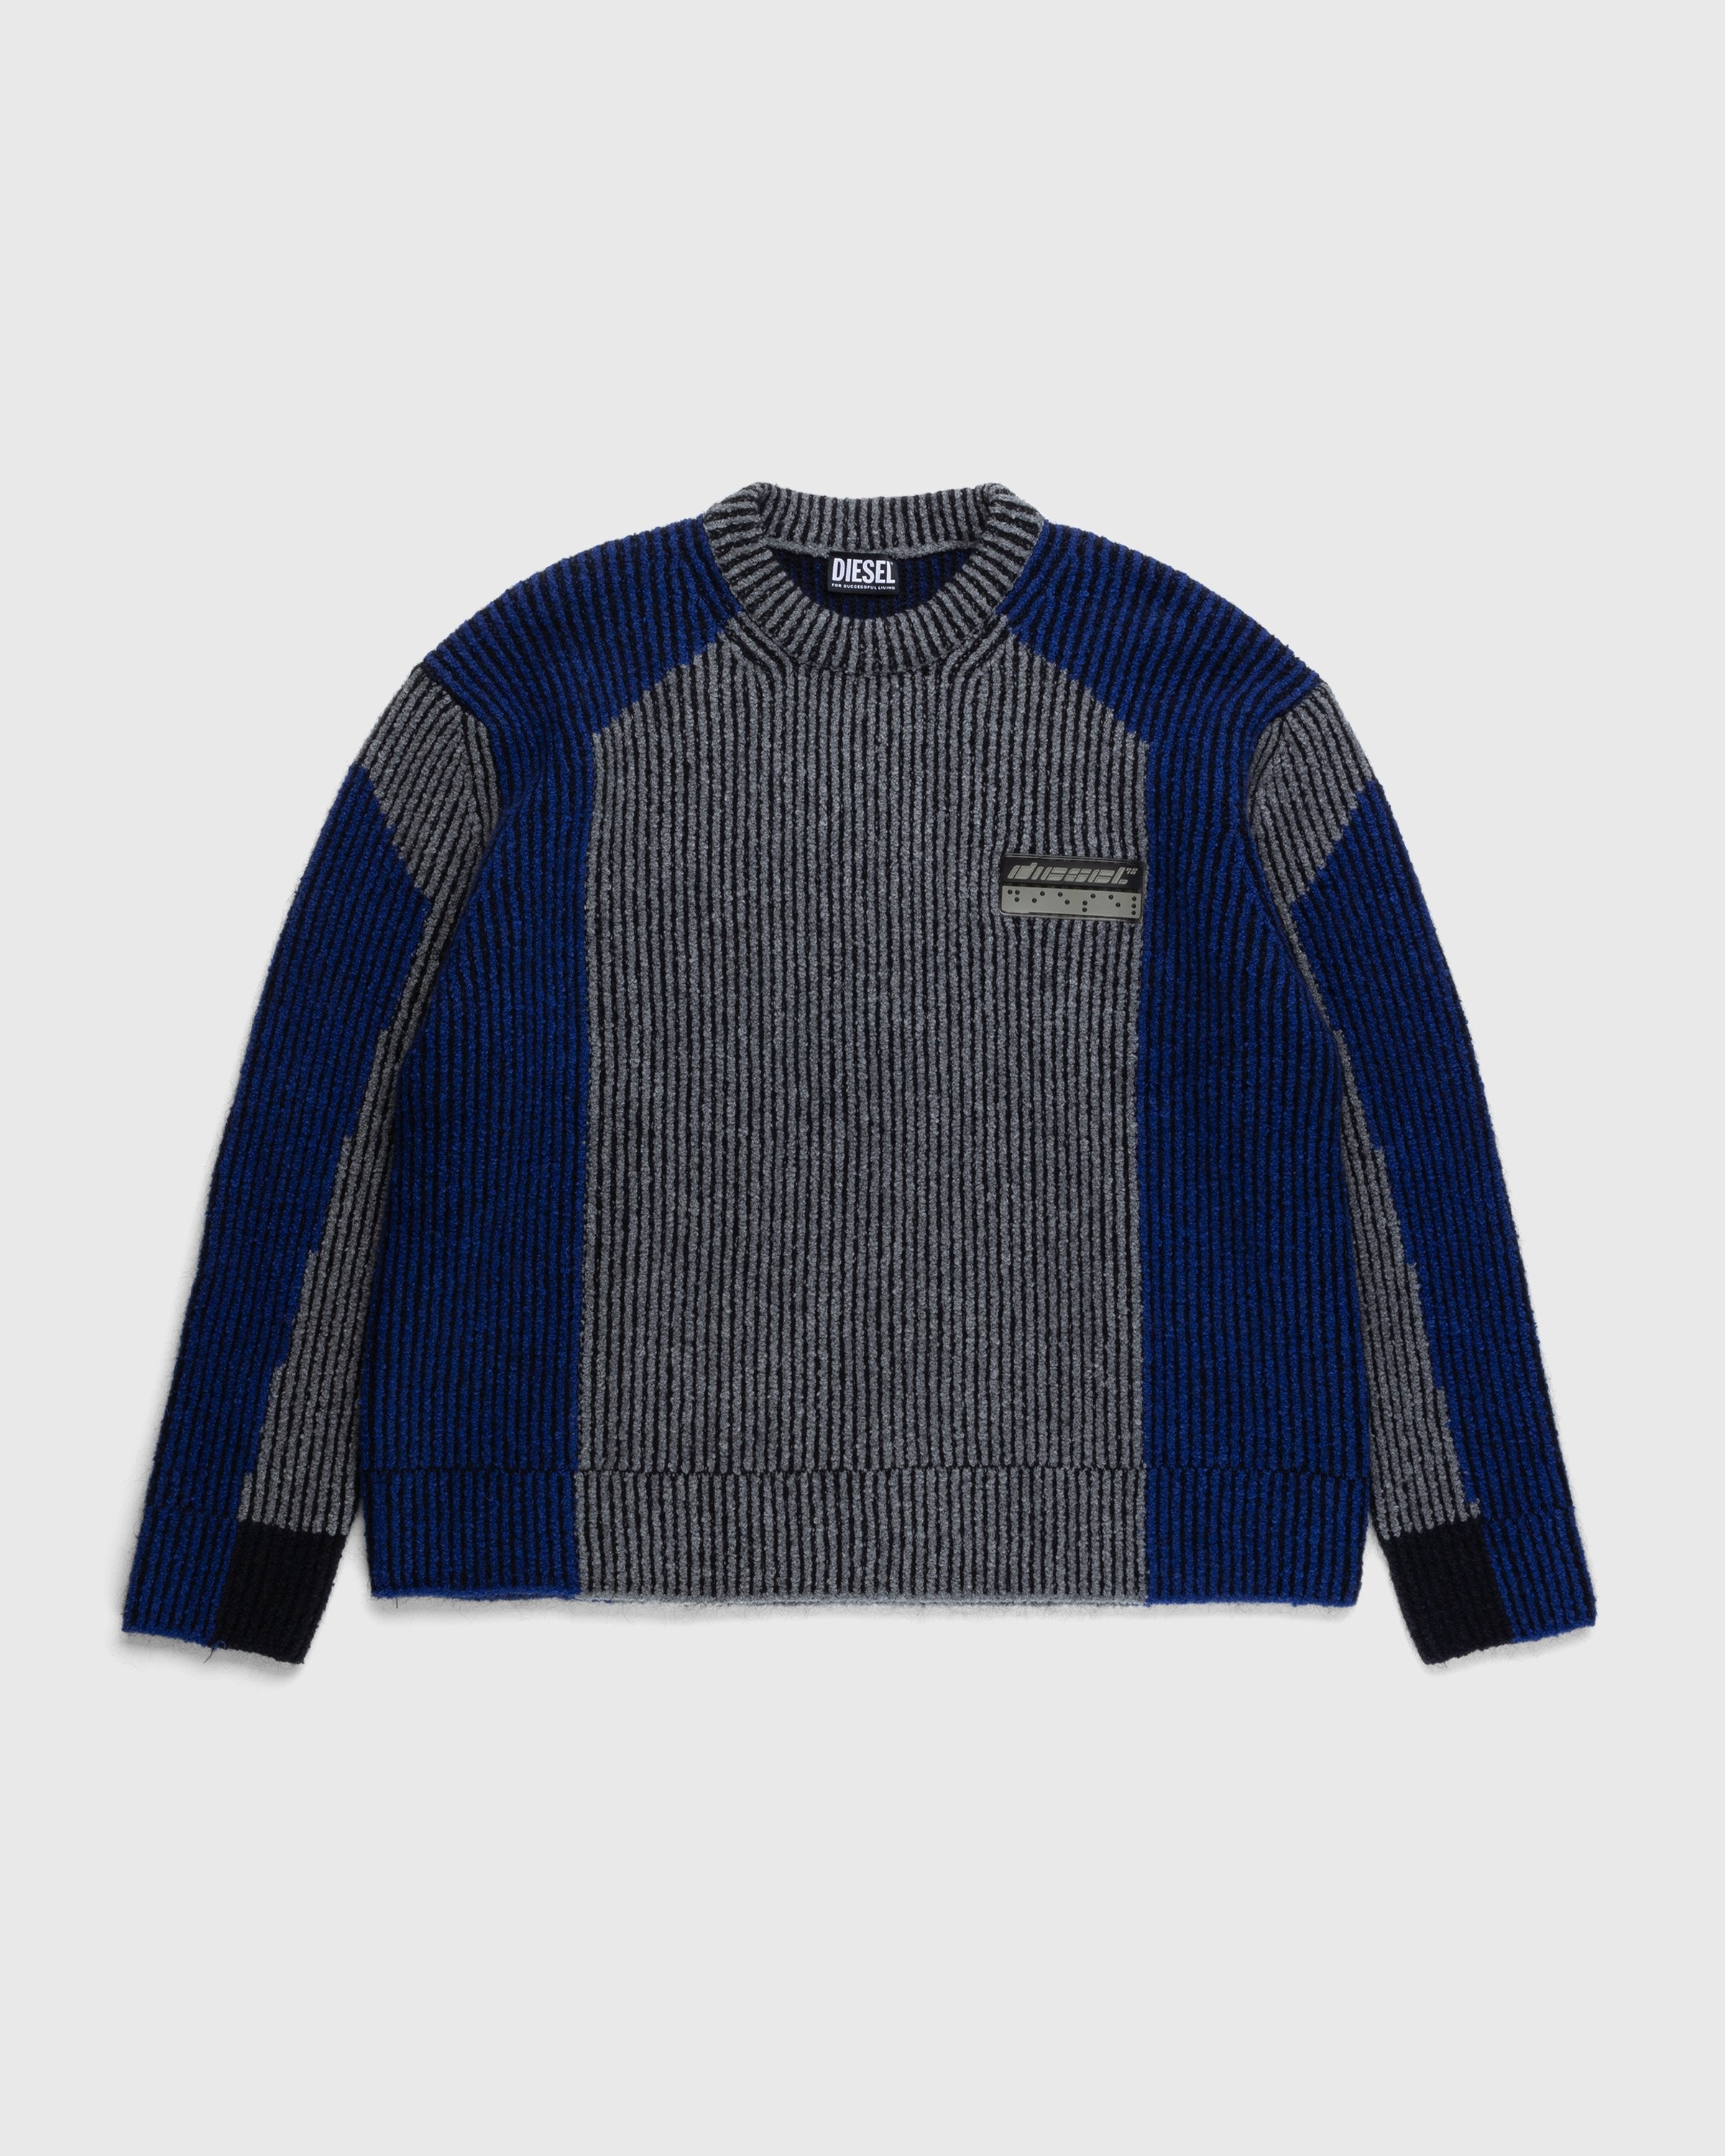 Diesel – Raig Sweater Blue - Knitwear - Blue - Image 1